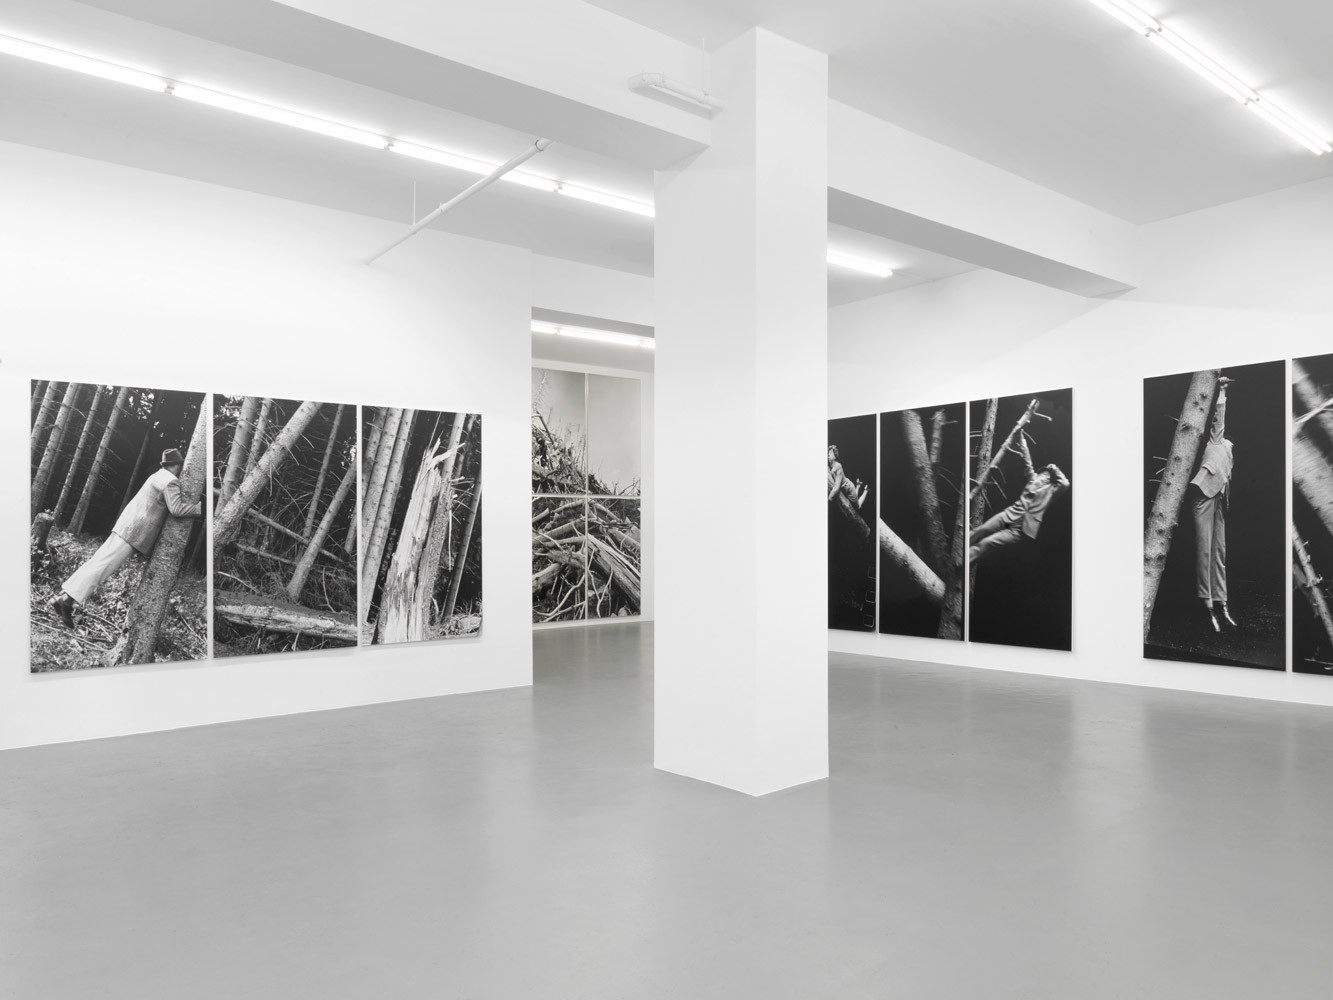 Anna & Bernhard Blume, ‘Im Wald’, Installation view, 2014